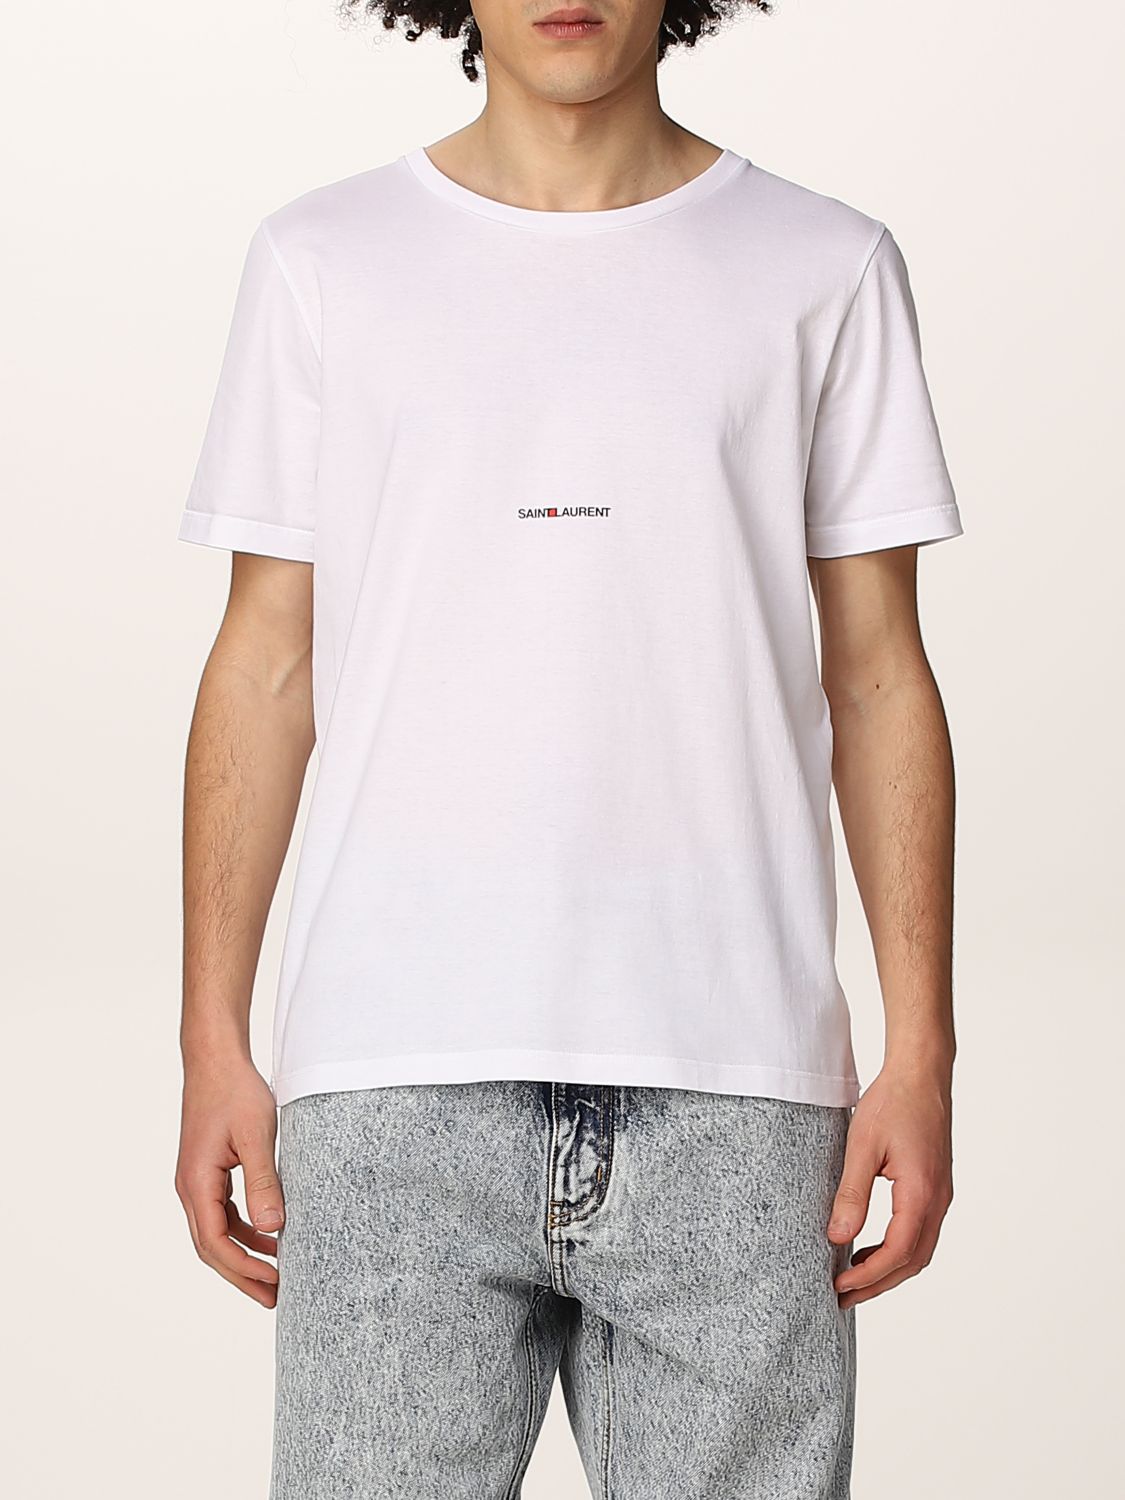 T-shirt Saint Laurent: Saint Laurent cotton t-shirt with logo white 1